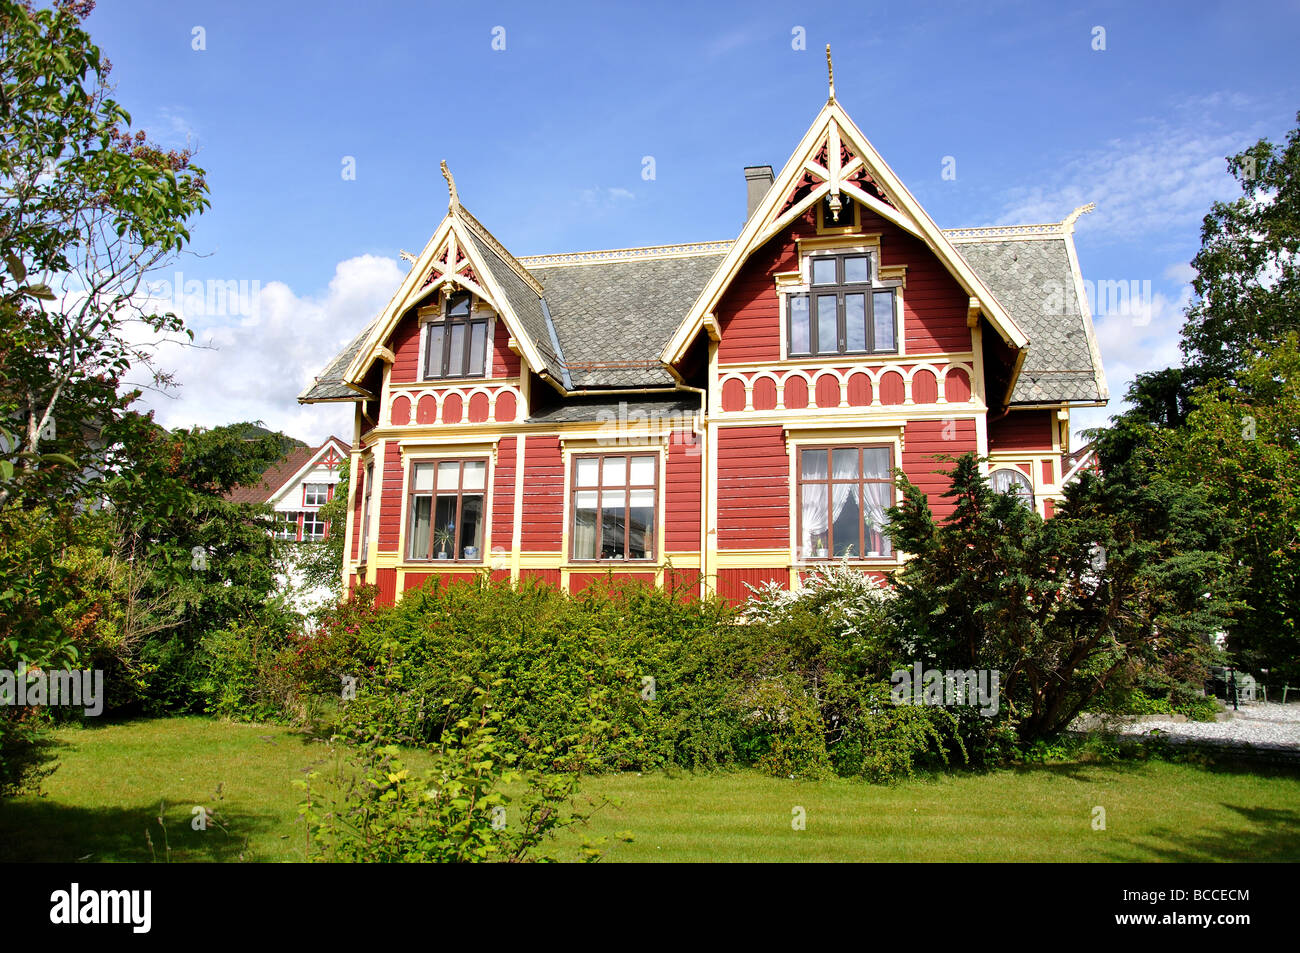 Nordic house, Eidsgata, Nordfjordeid, Sogn og Fjordane, Norway Stock Photo